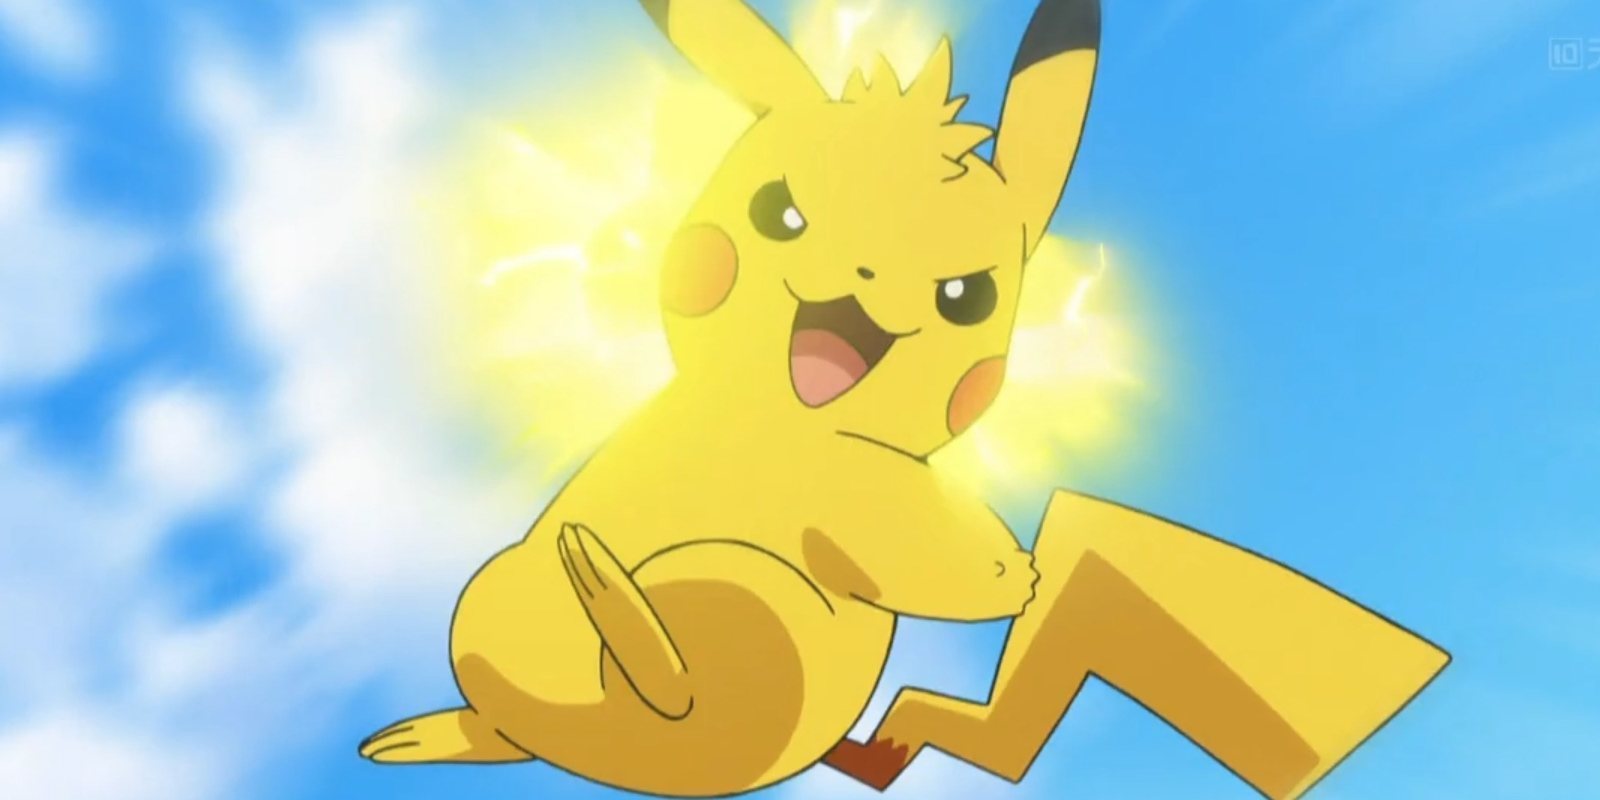 El diseño de Pikachu en 'Pokémon' está basado originalmente en una ardilla